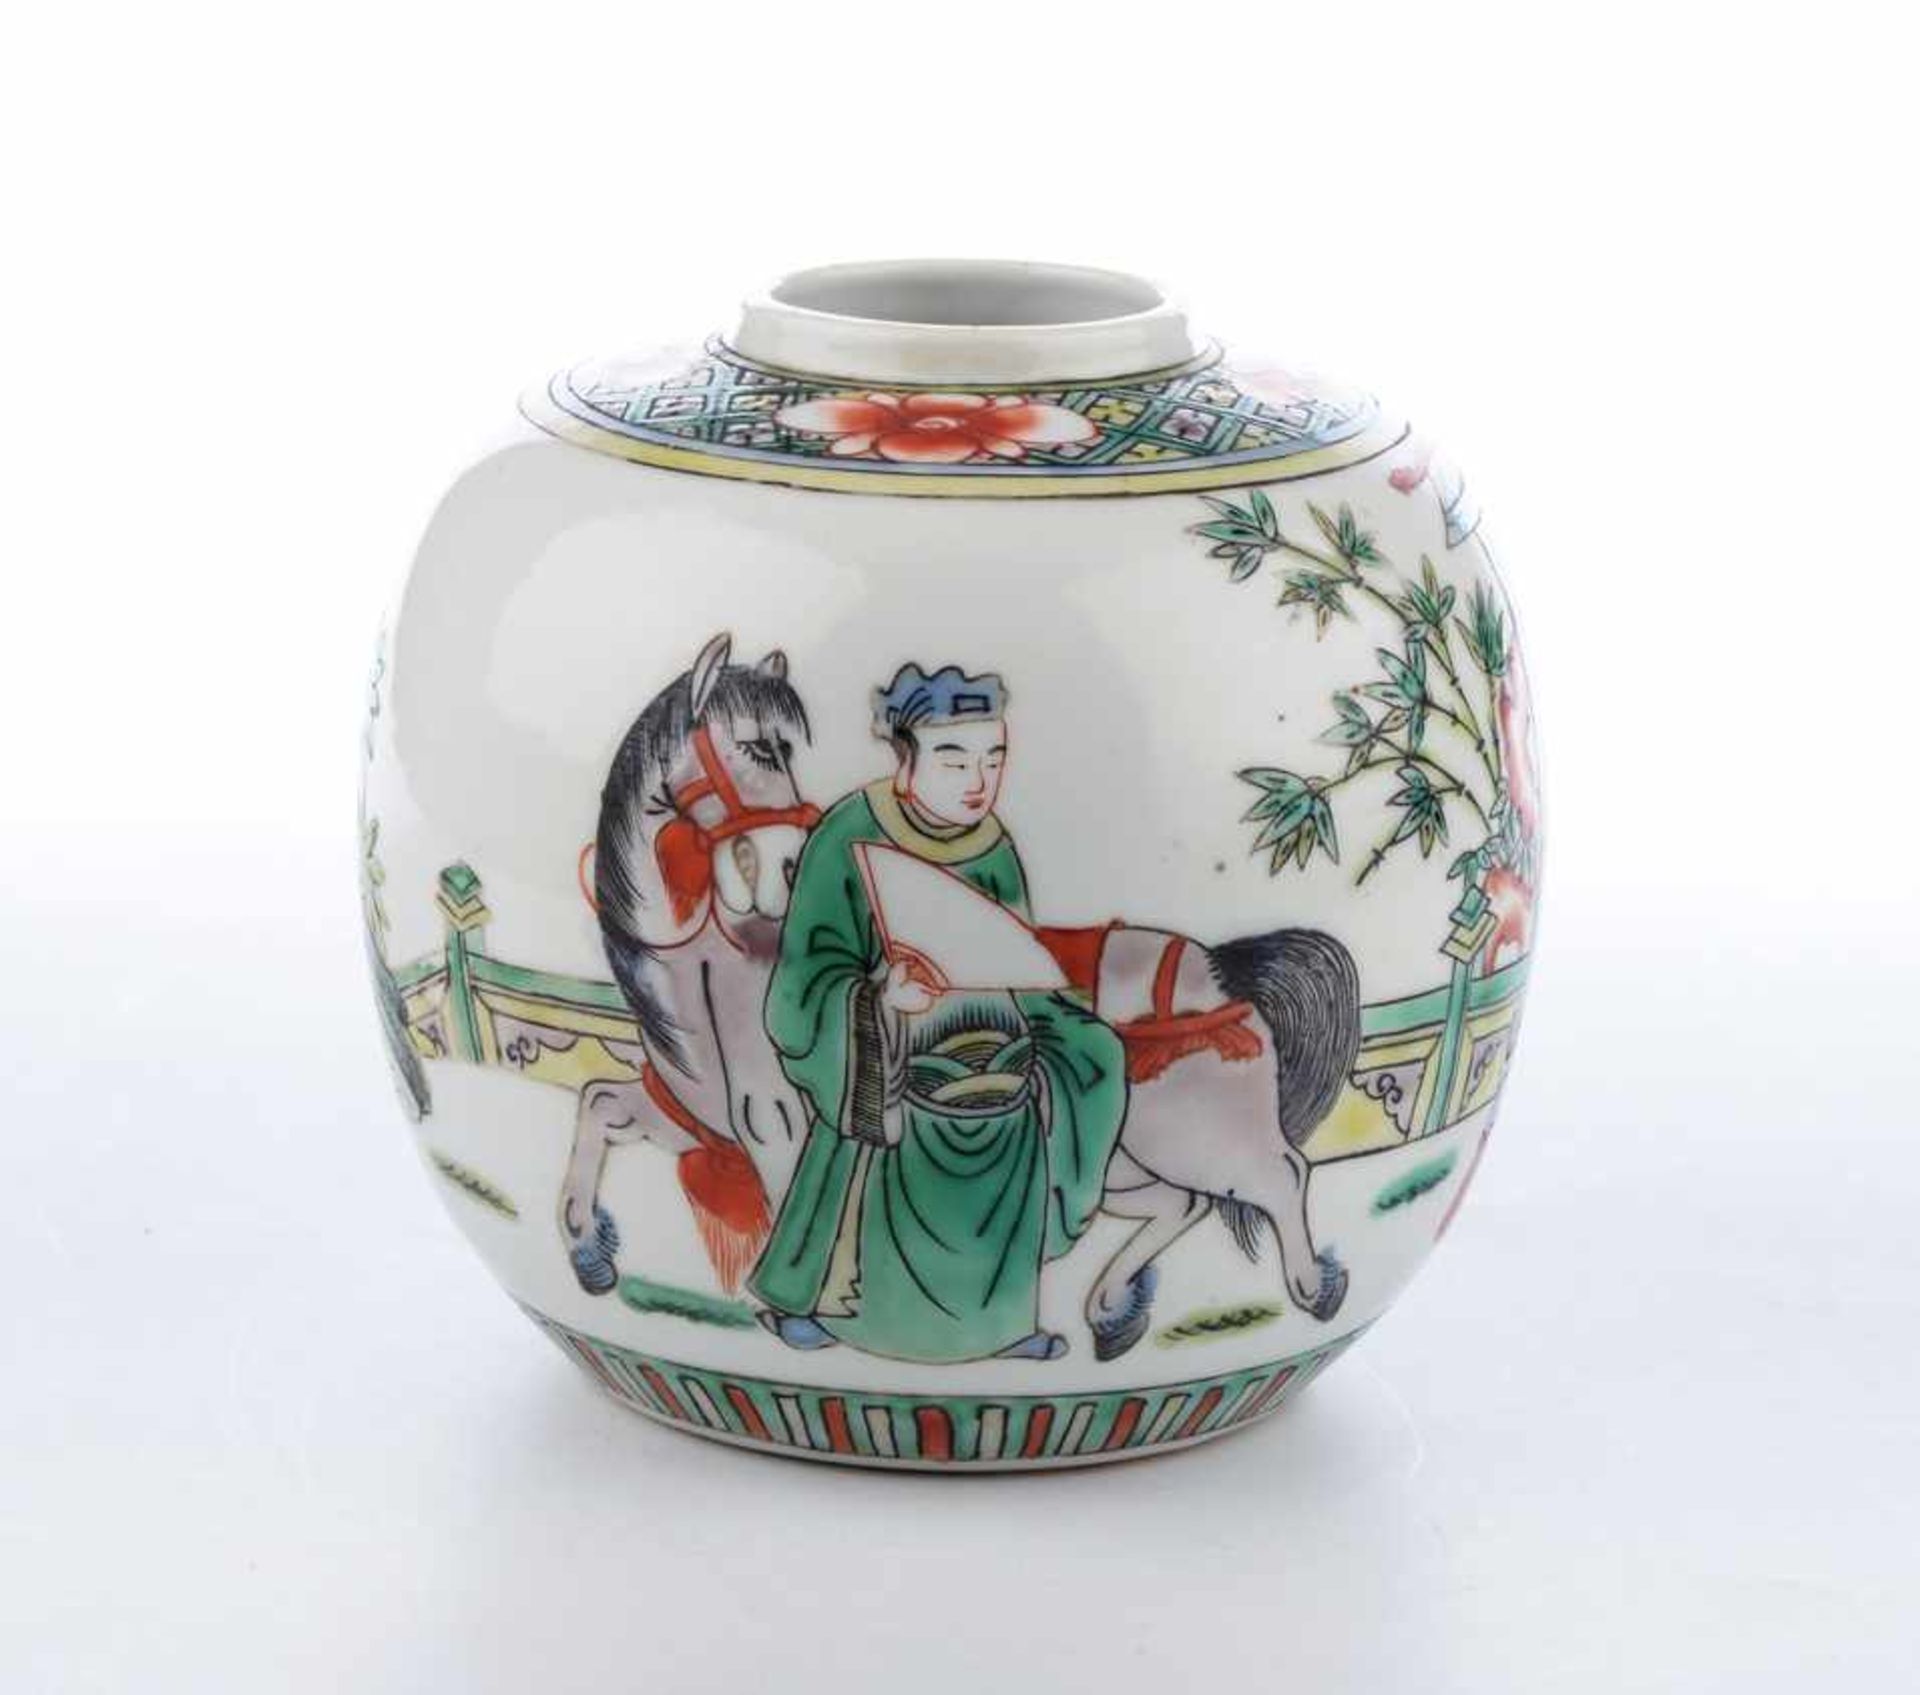 Kleine ovoide Wucai-Vase, China Qing-Dynastie. Palastszene in Schmelzfarben, unsigniert. - Bild 2 aus 3